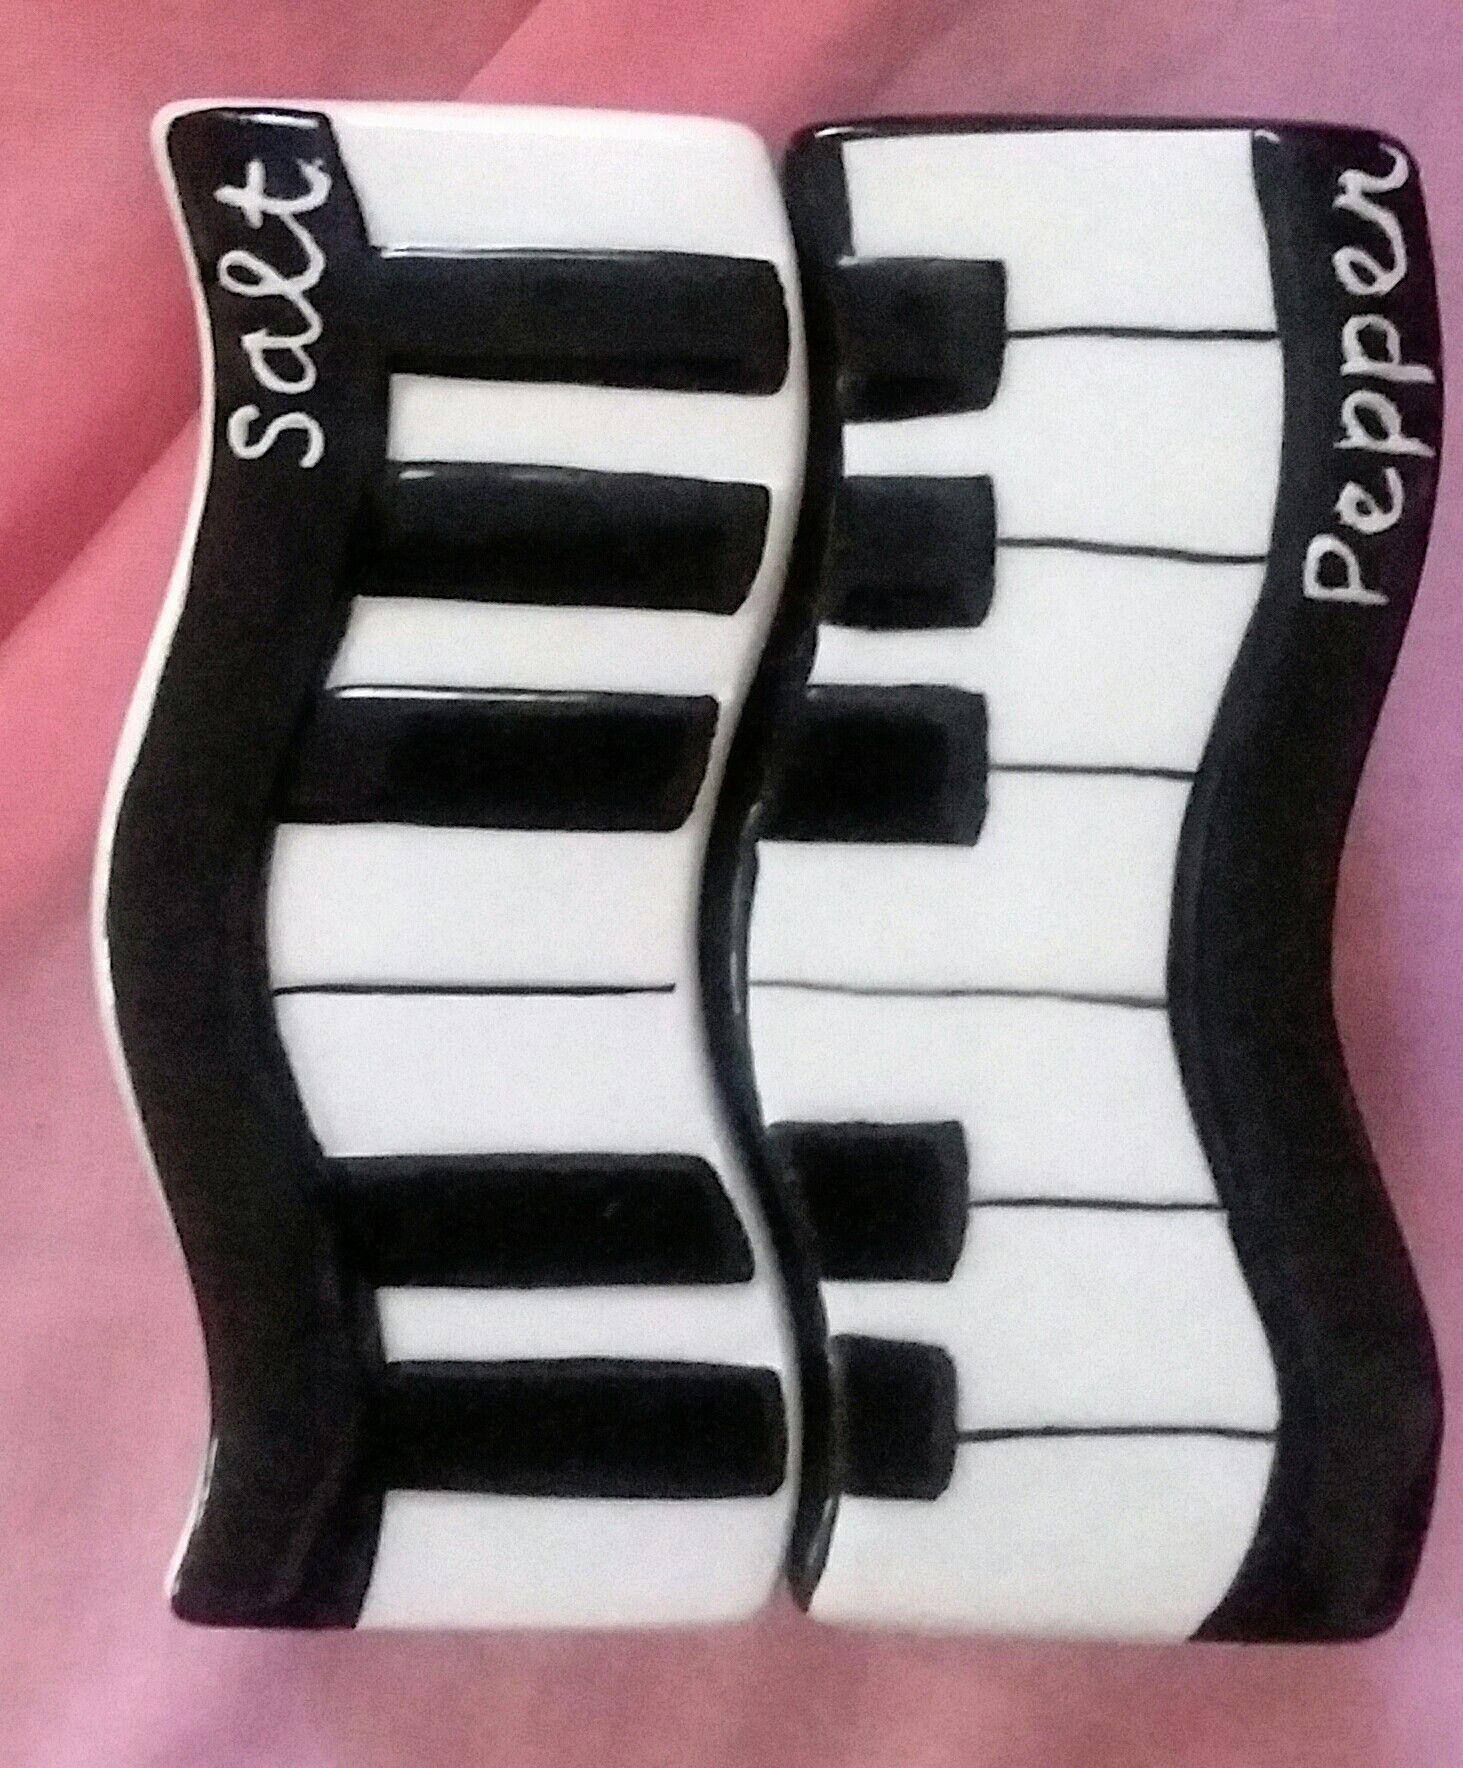 Black & White Piano Musical Keyboard Salt & Pepper Shaker Set